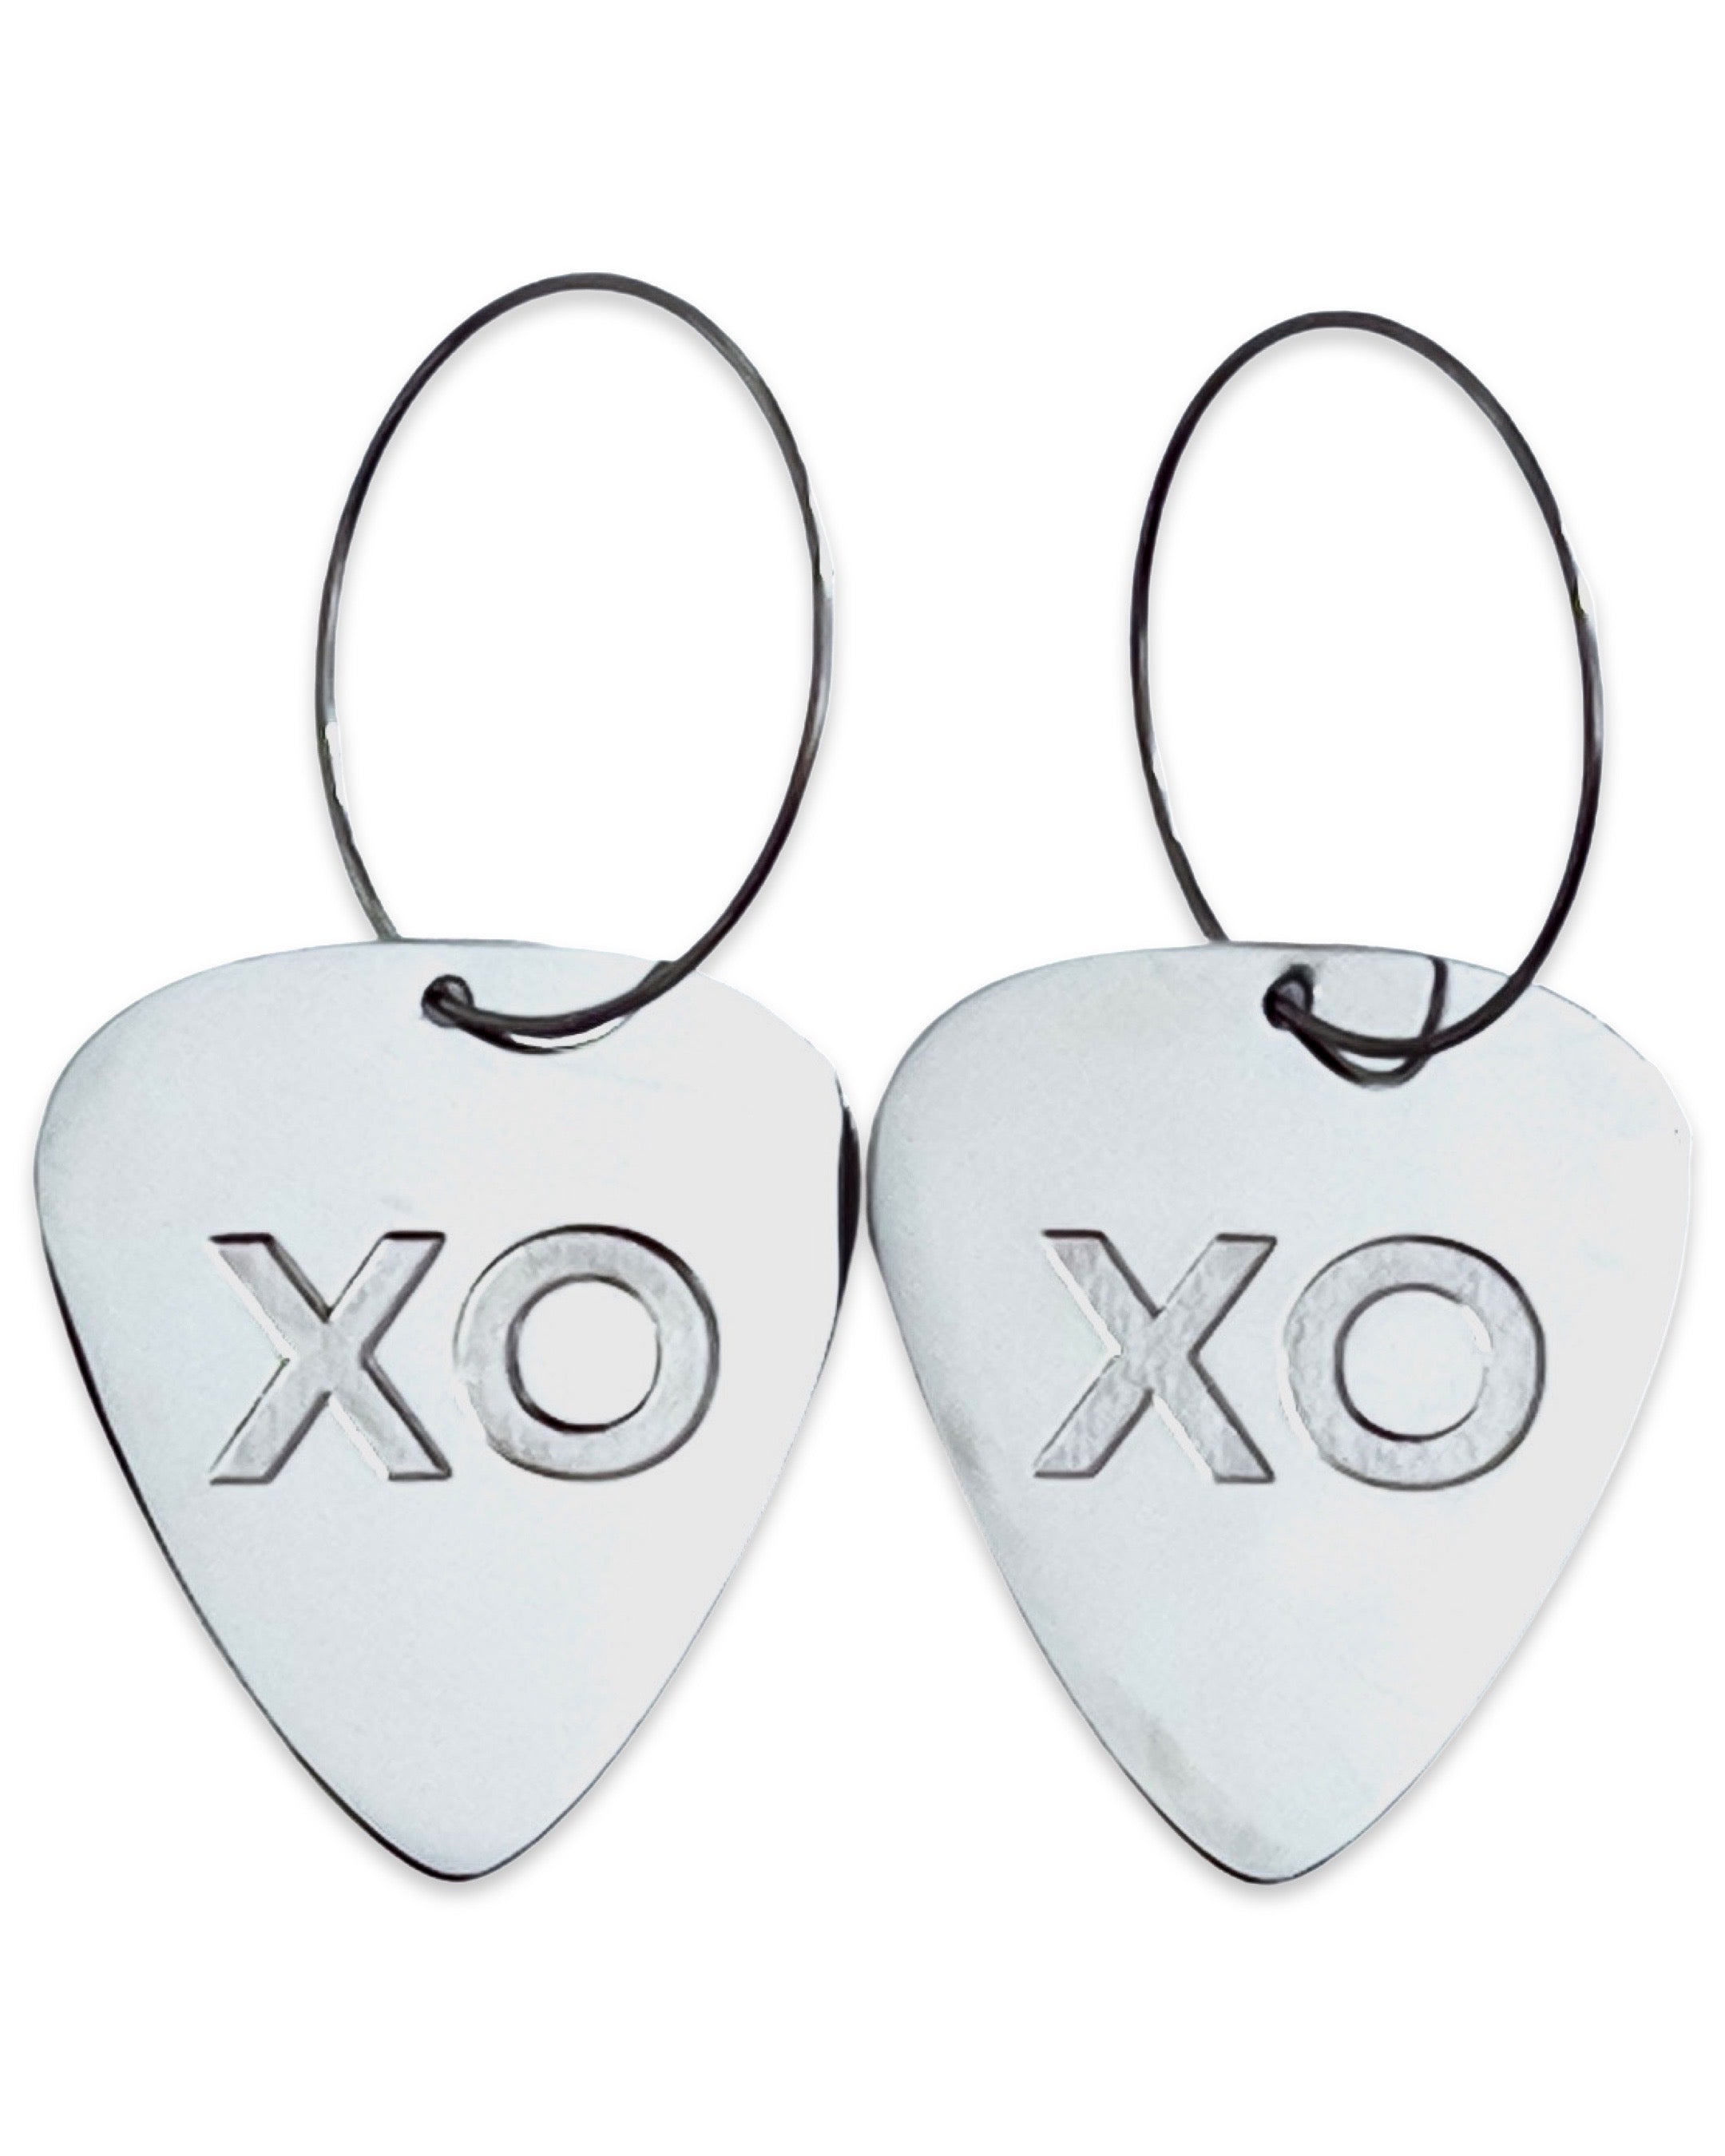 XO Steel Reversible Single Guitar Pick Earrings